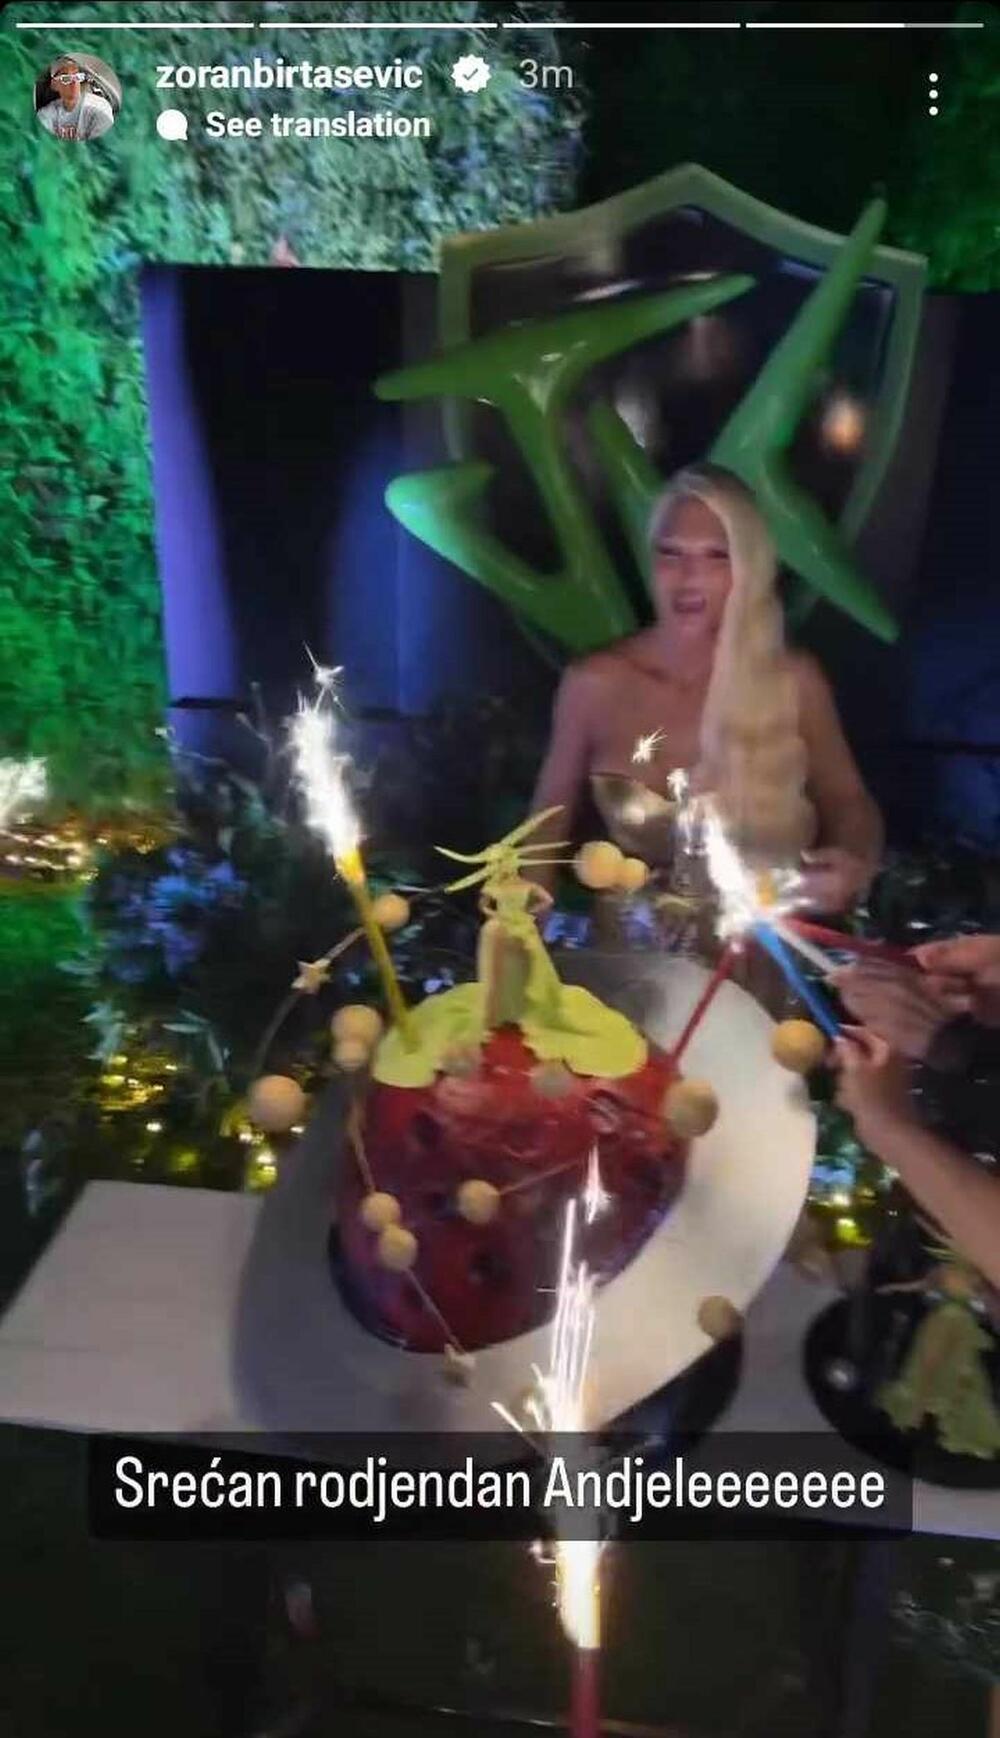 Torte na rođendanskoj žurki Jelene Karleuše